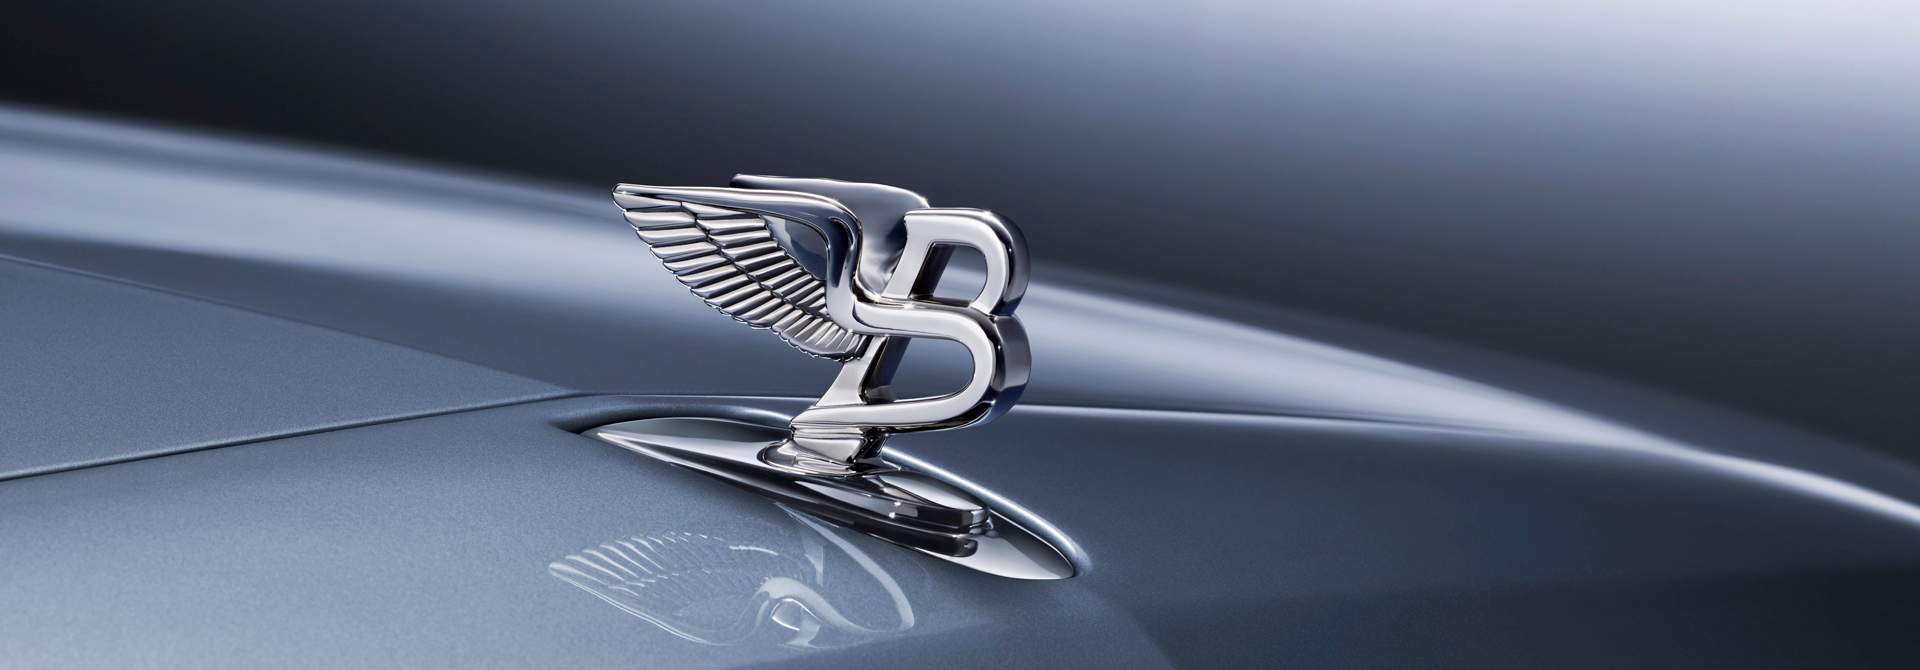 Bentley hood ornament